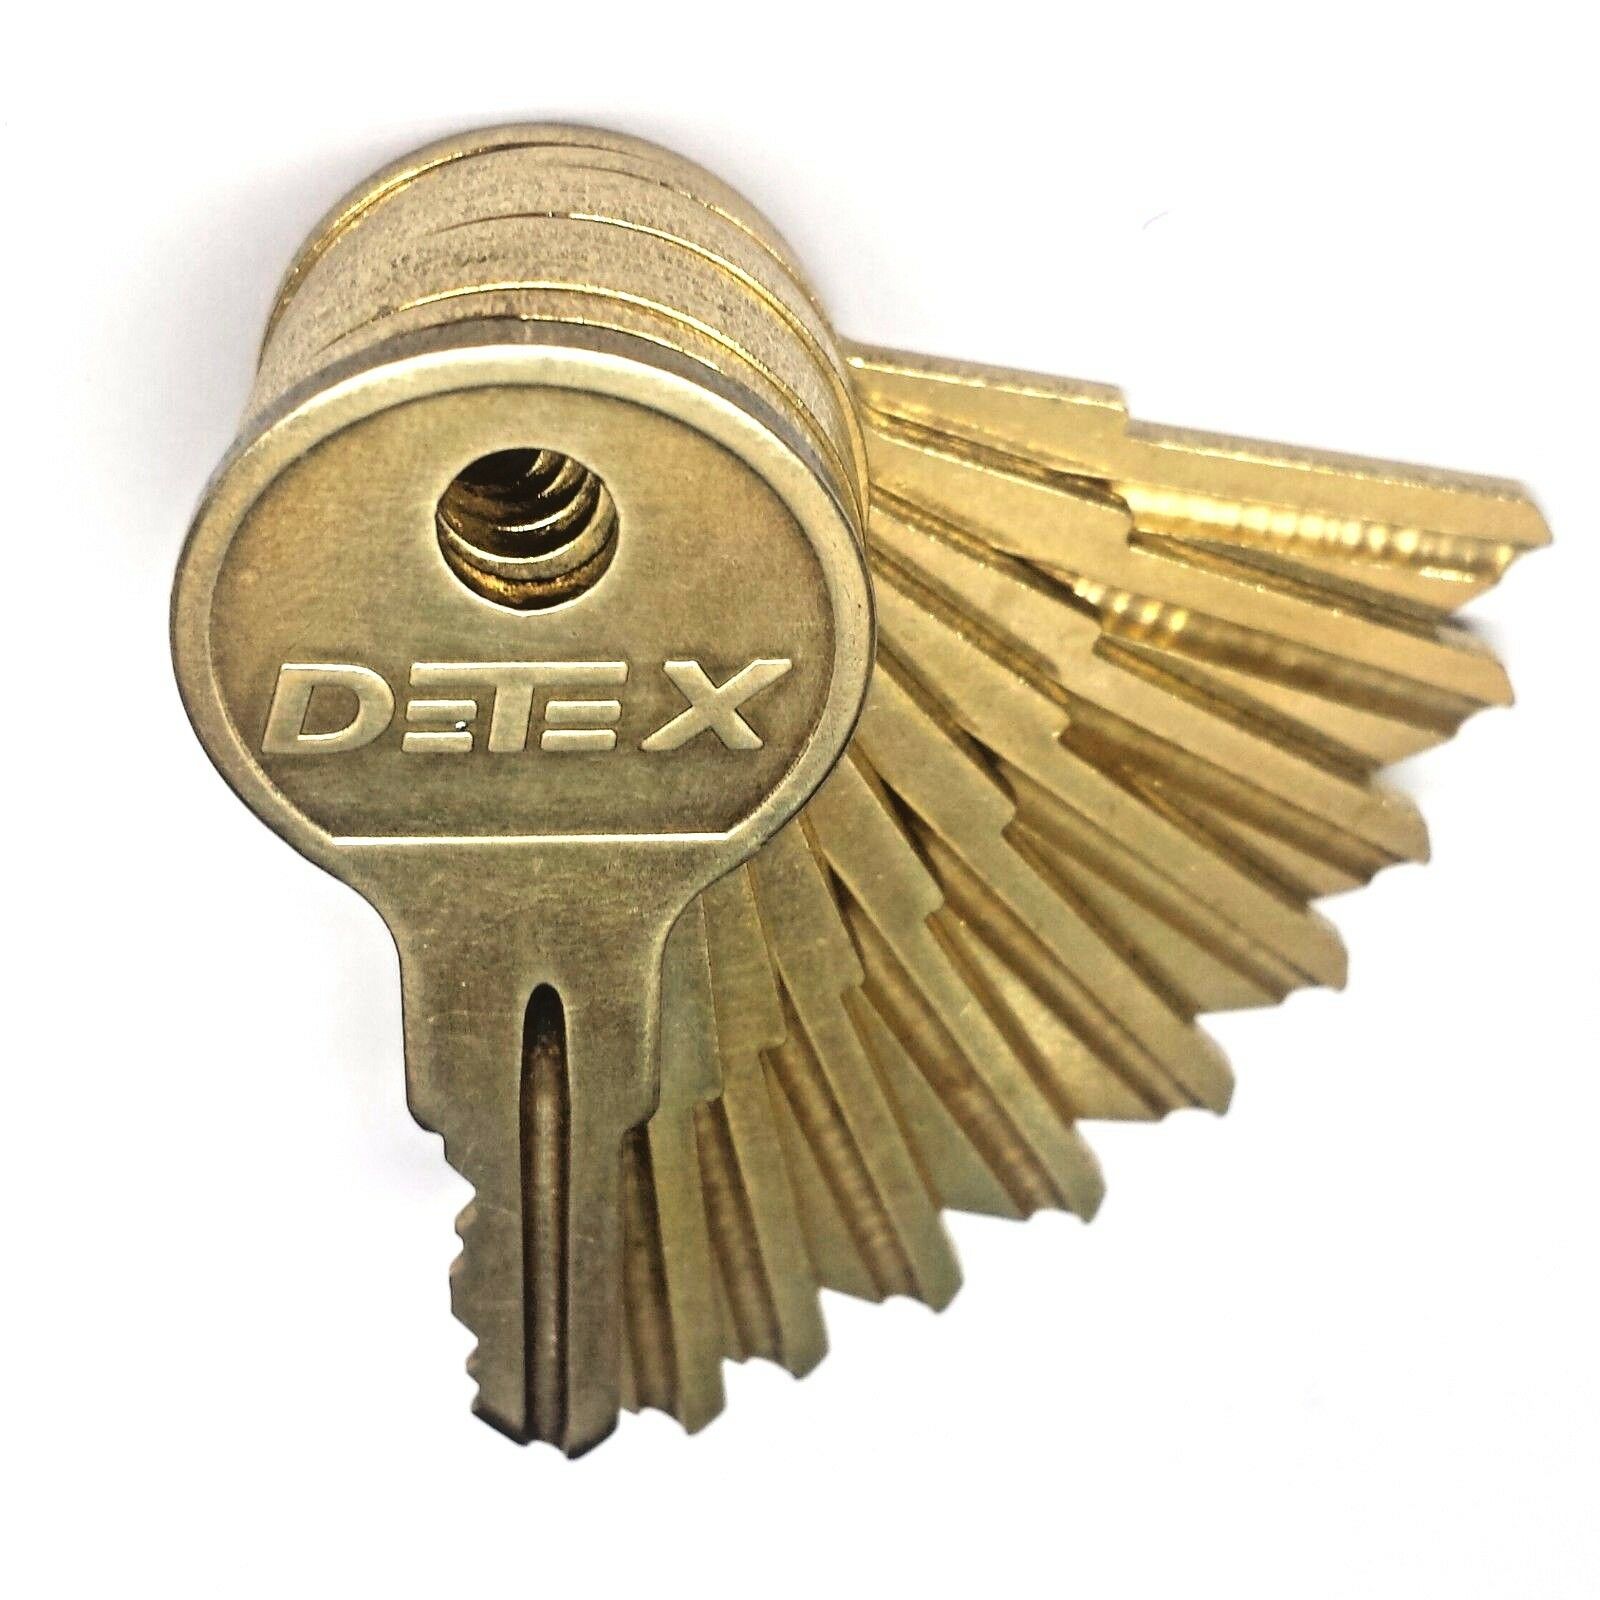 Detex Key 🔑 Alarm Keys Set Or Single Key. Battery Access Cover Ecl230 Eax500 Dt